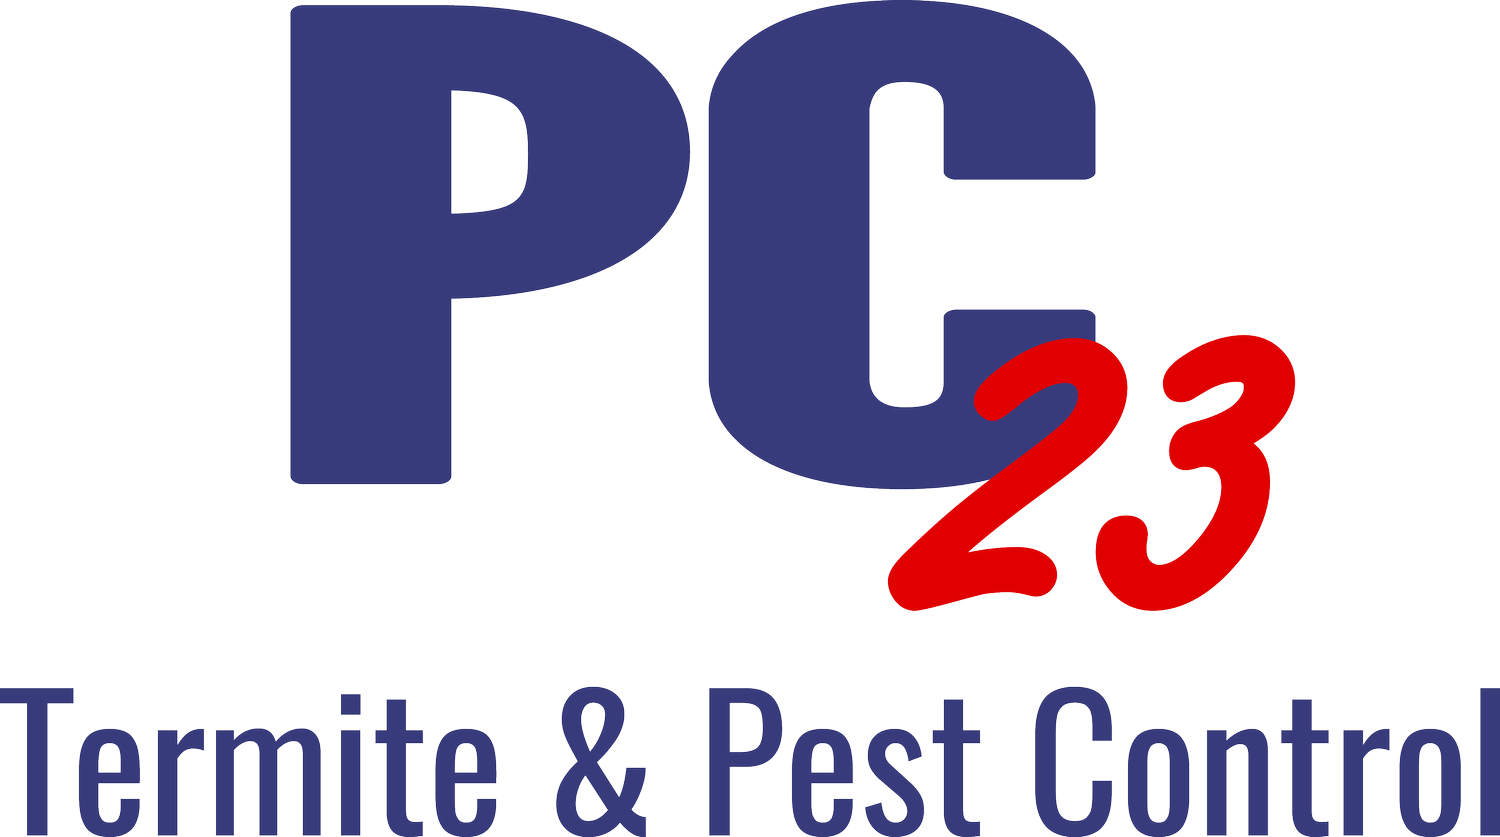 PC23 Pest Control 